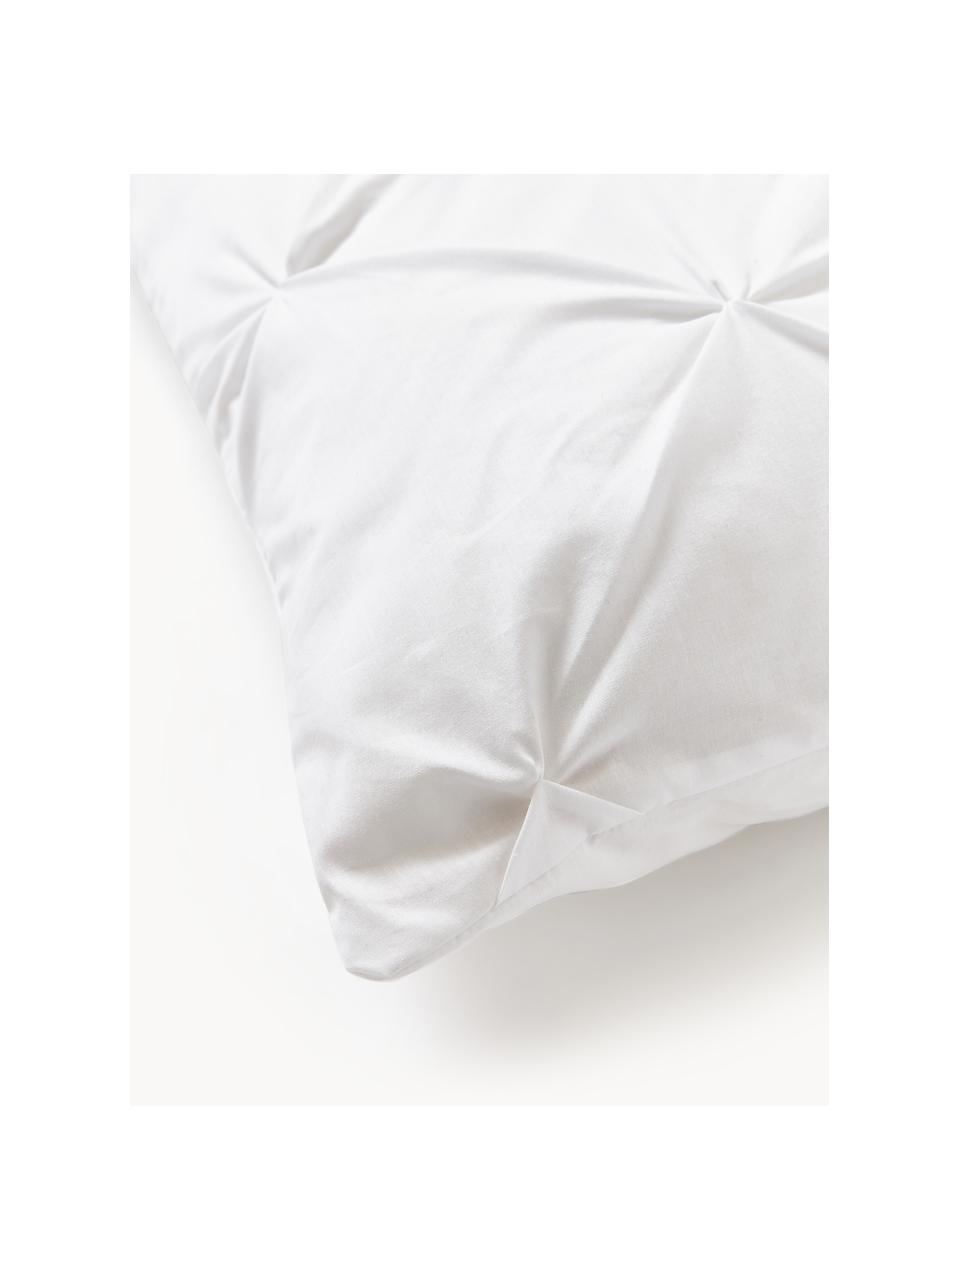 Funda de almohada de percal en look origami Brody, Blanco, An 45 x L 110 cm